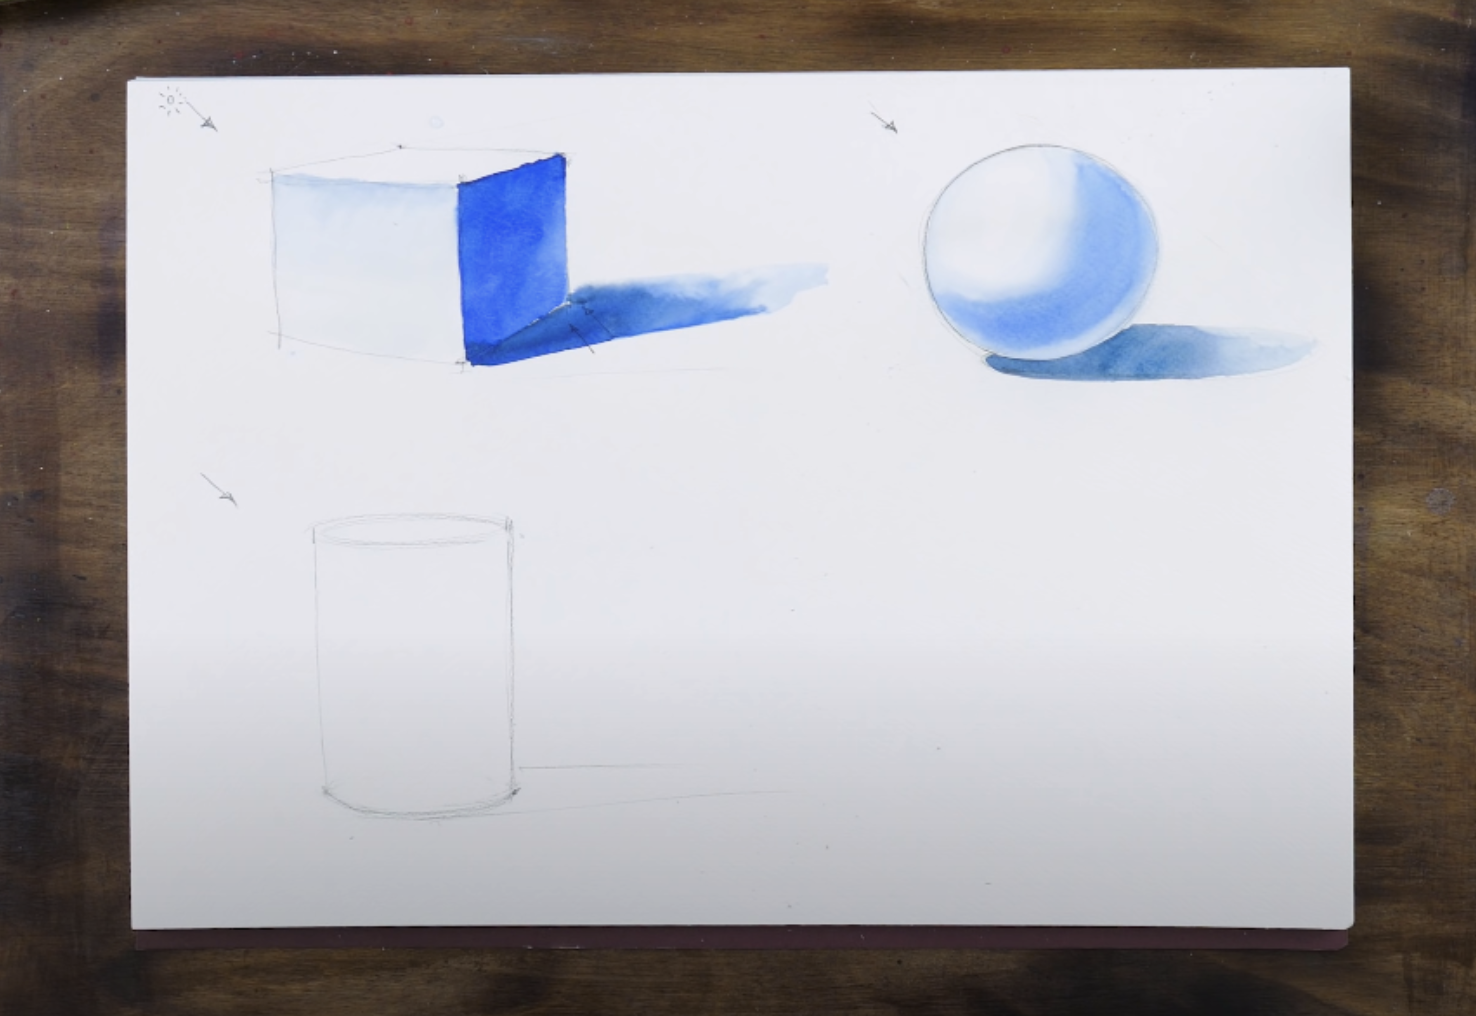 Как нарисовать куб, шар и цилиндр поэтапно | Бесплатный урок живописи для  начинающих от Художник Online